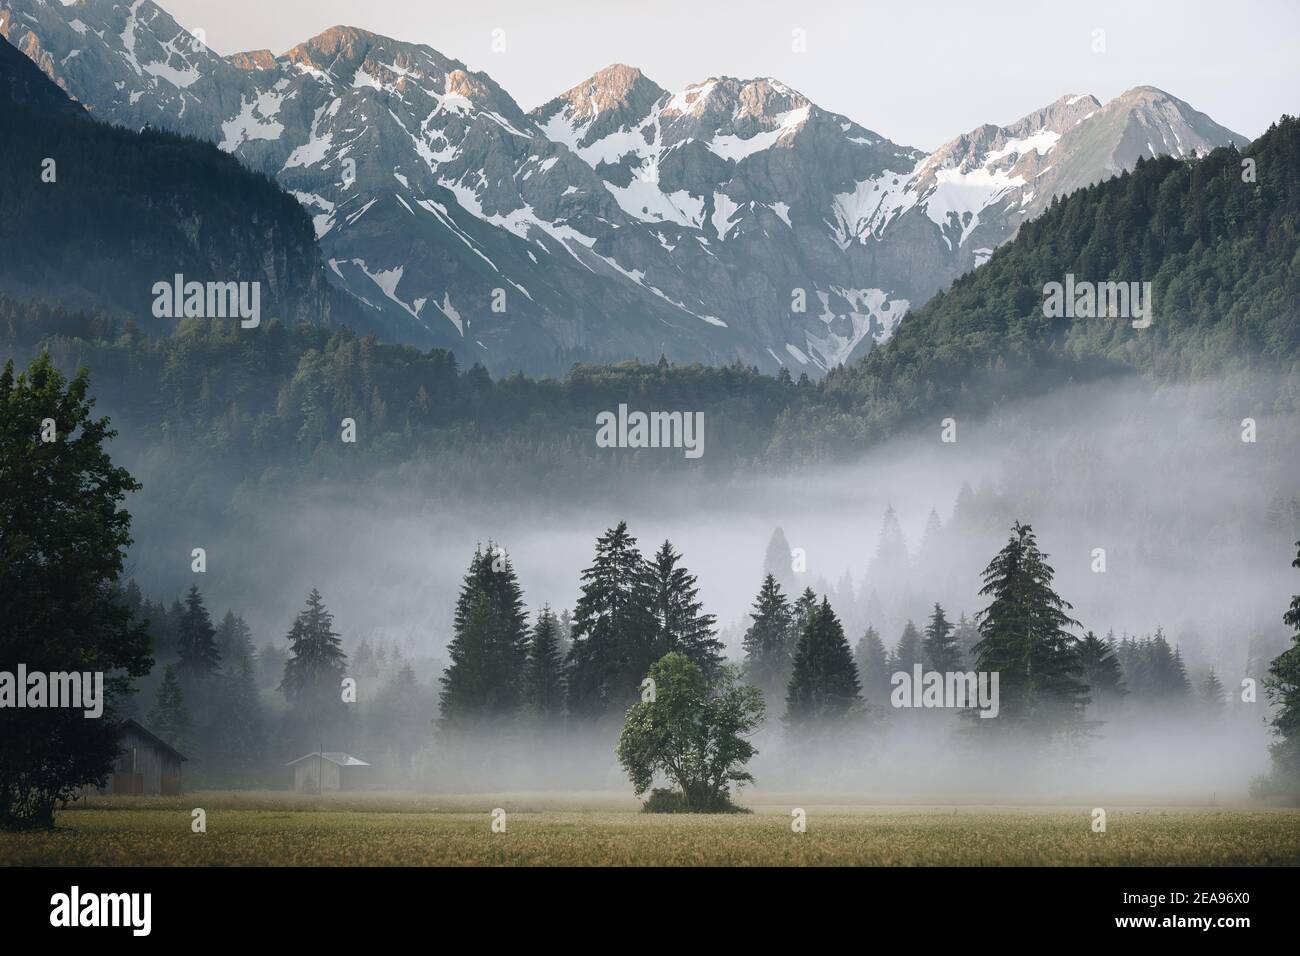 Amanecer sobre un prado cerca de Oberstdorf. En el fondo, los Alpes altos de Allgäu se extienden detrás de árboles y bosques foggy / secciones de bosque Foto de stock